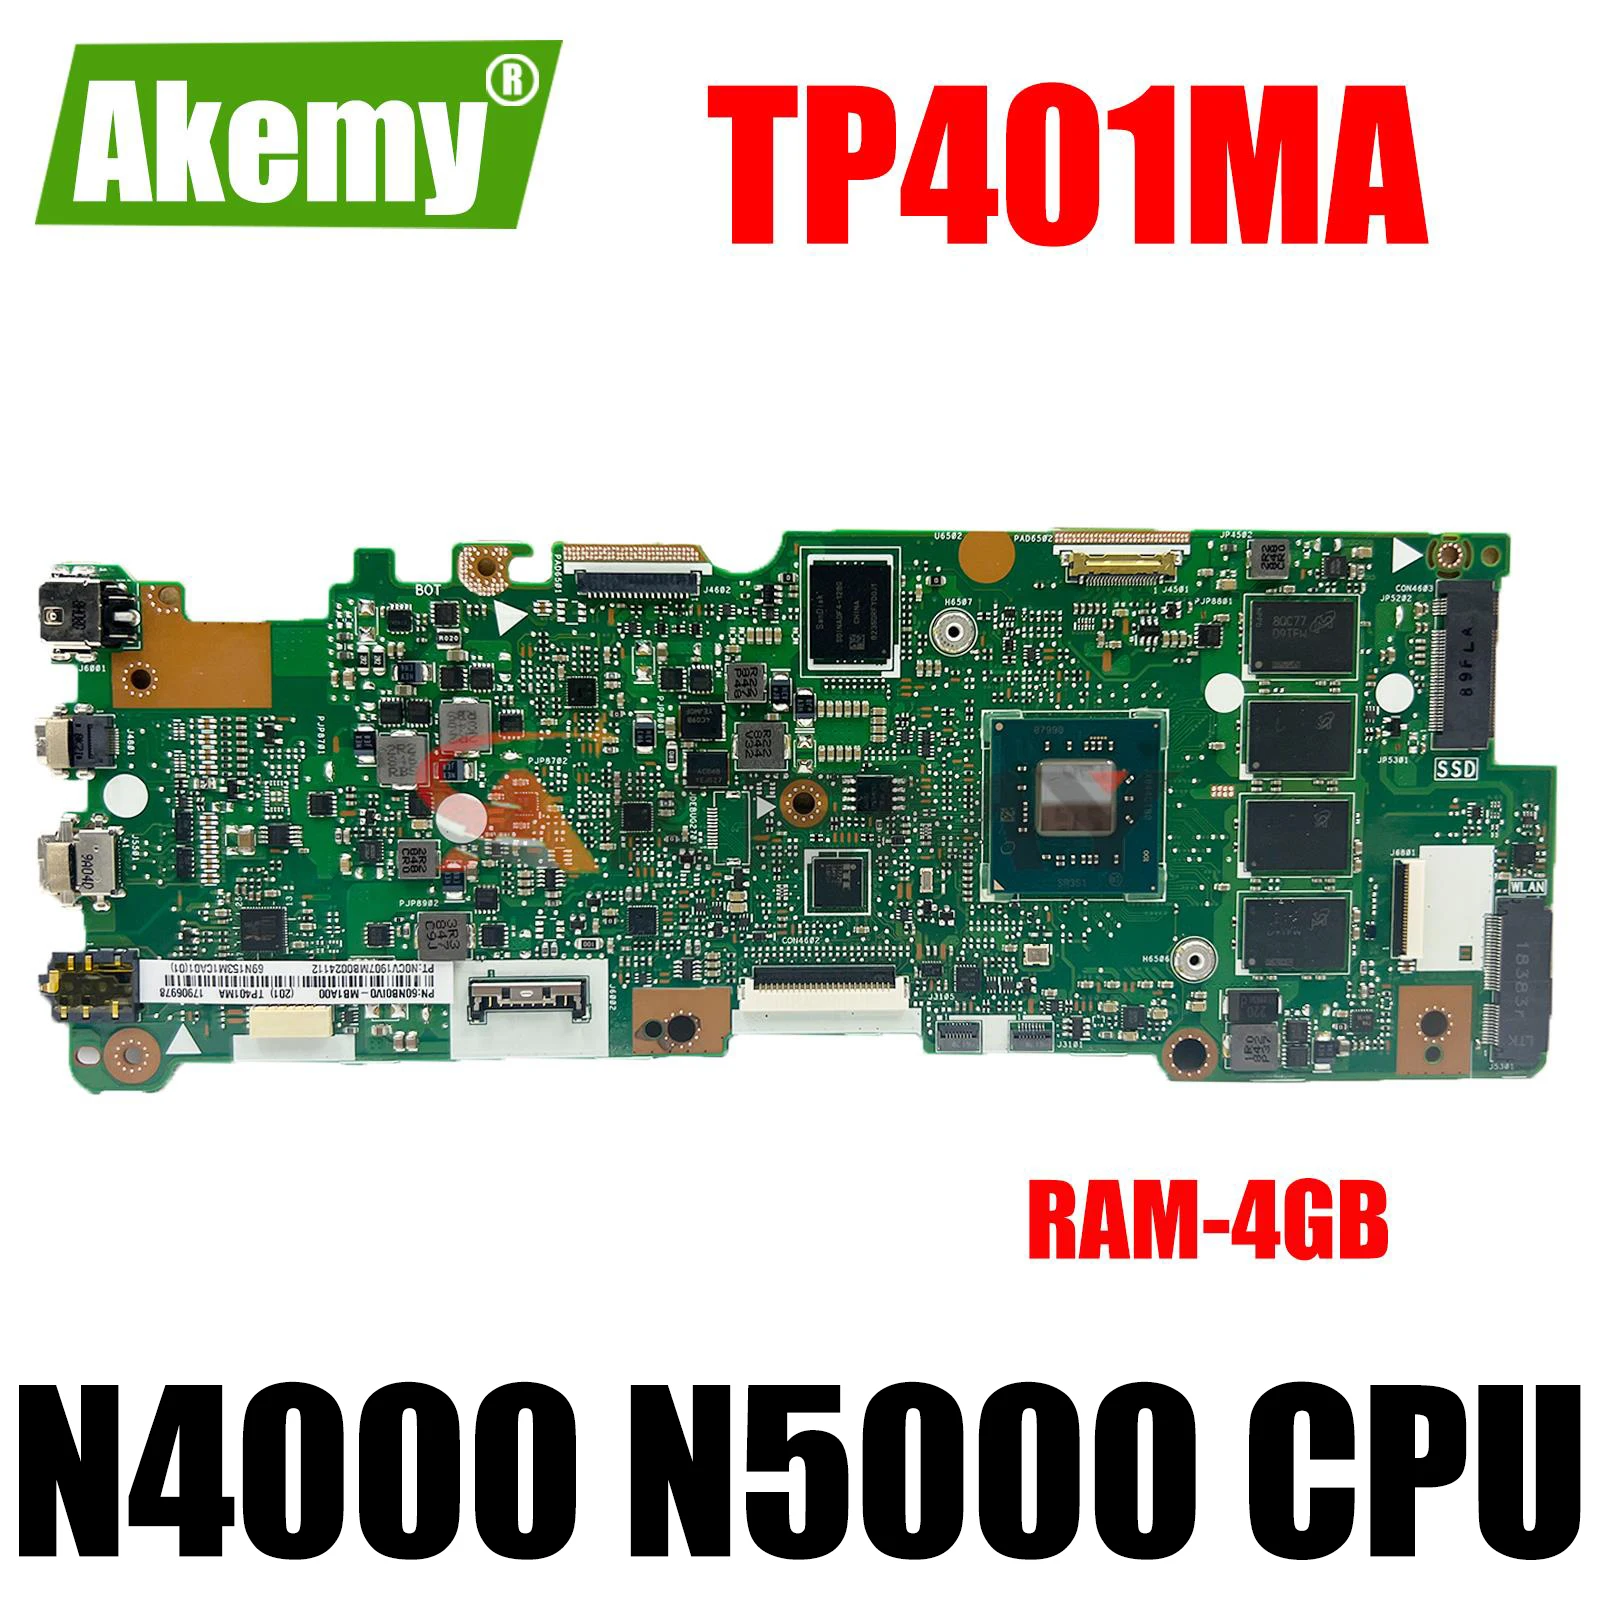 

TP401MA Motherboard TP401MA TP401MAS TP401MAR TP401MARB TP401M J401MA Laptop Mainboard CPU:N4000/N5000 SSD-64G/128G RAM-4GB